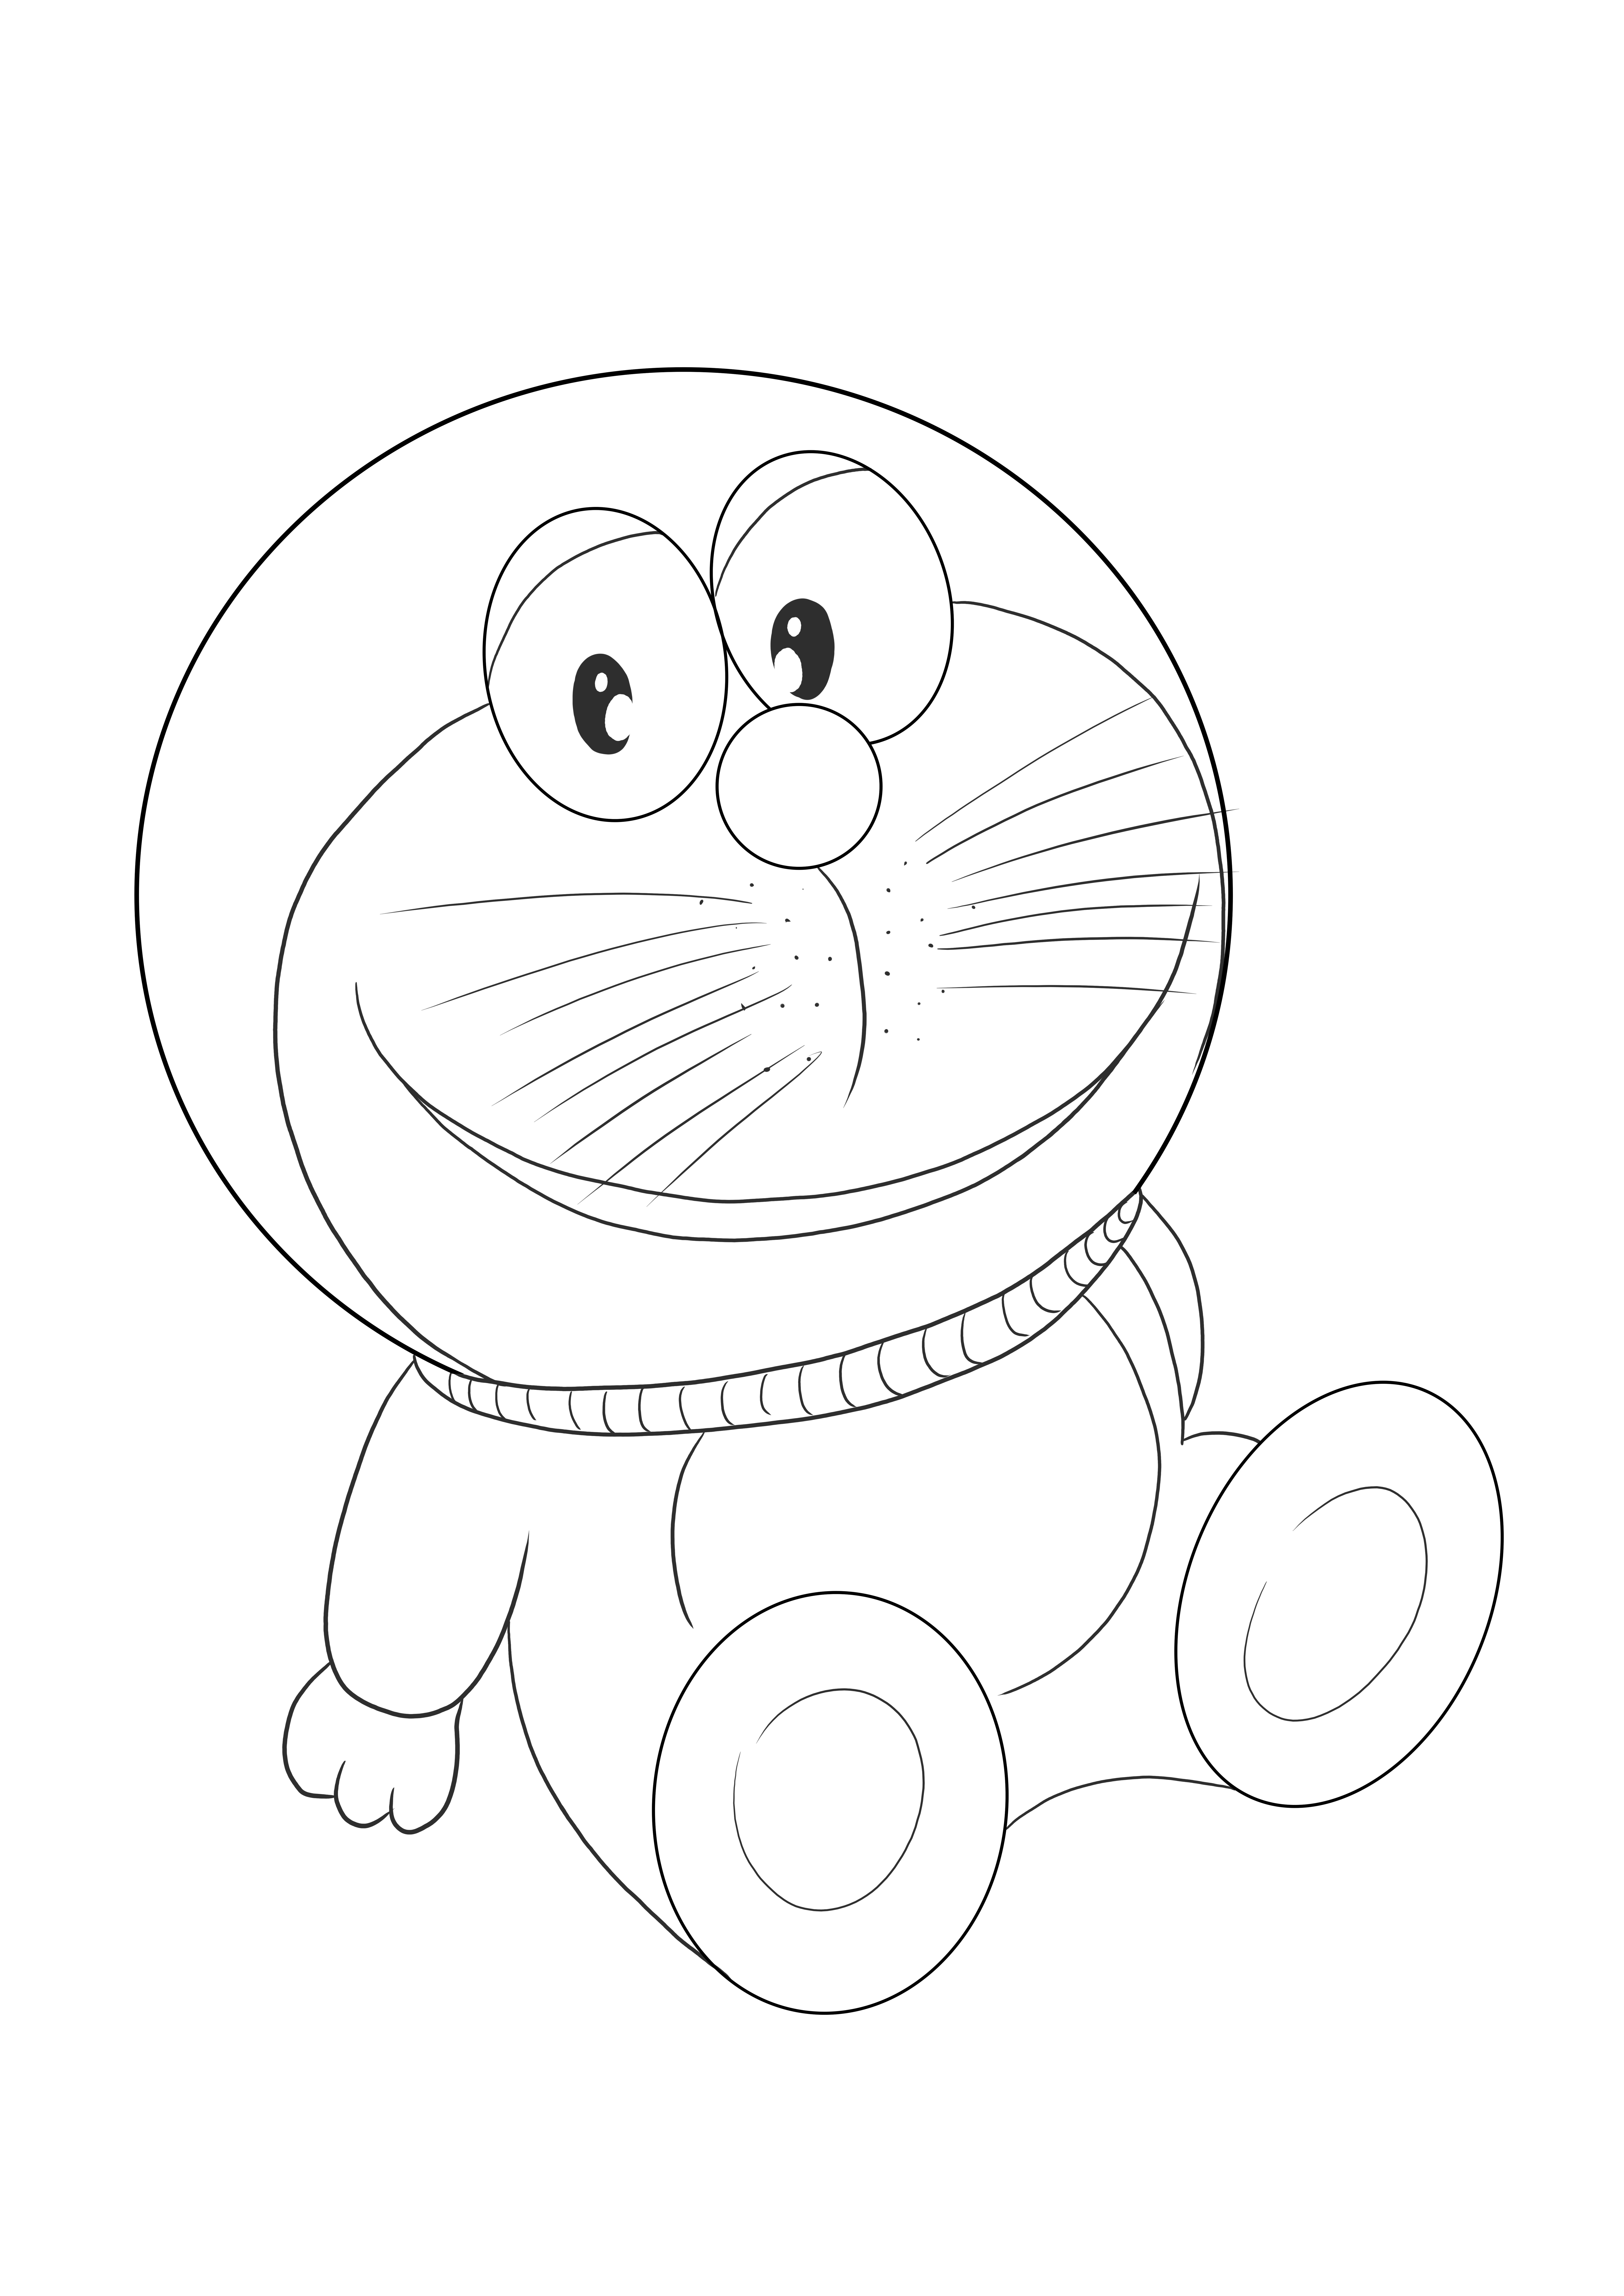 Immagine stampabile gratuita di Doraemon da colorare per bambini